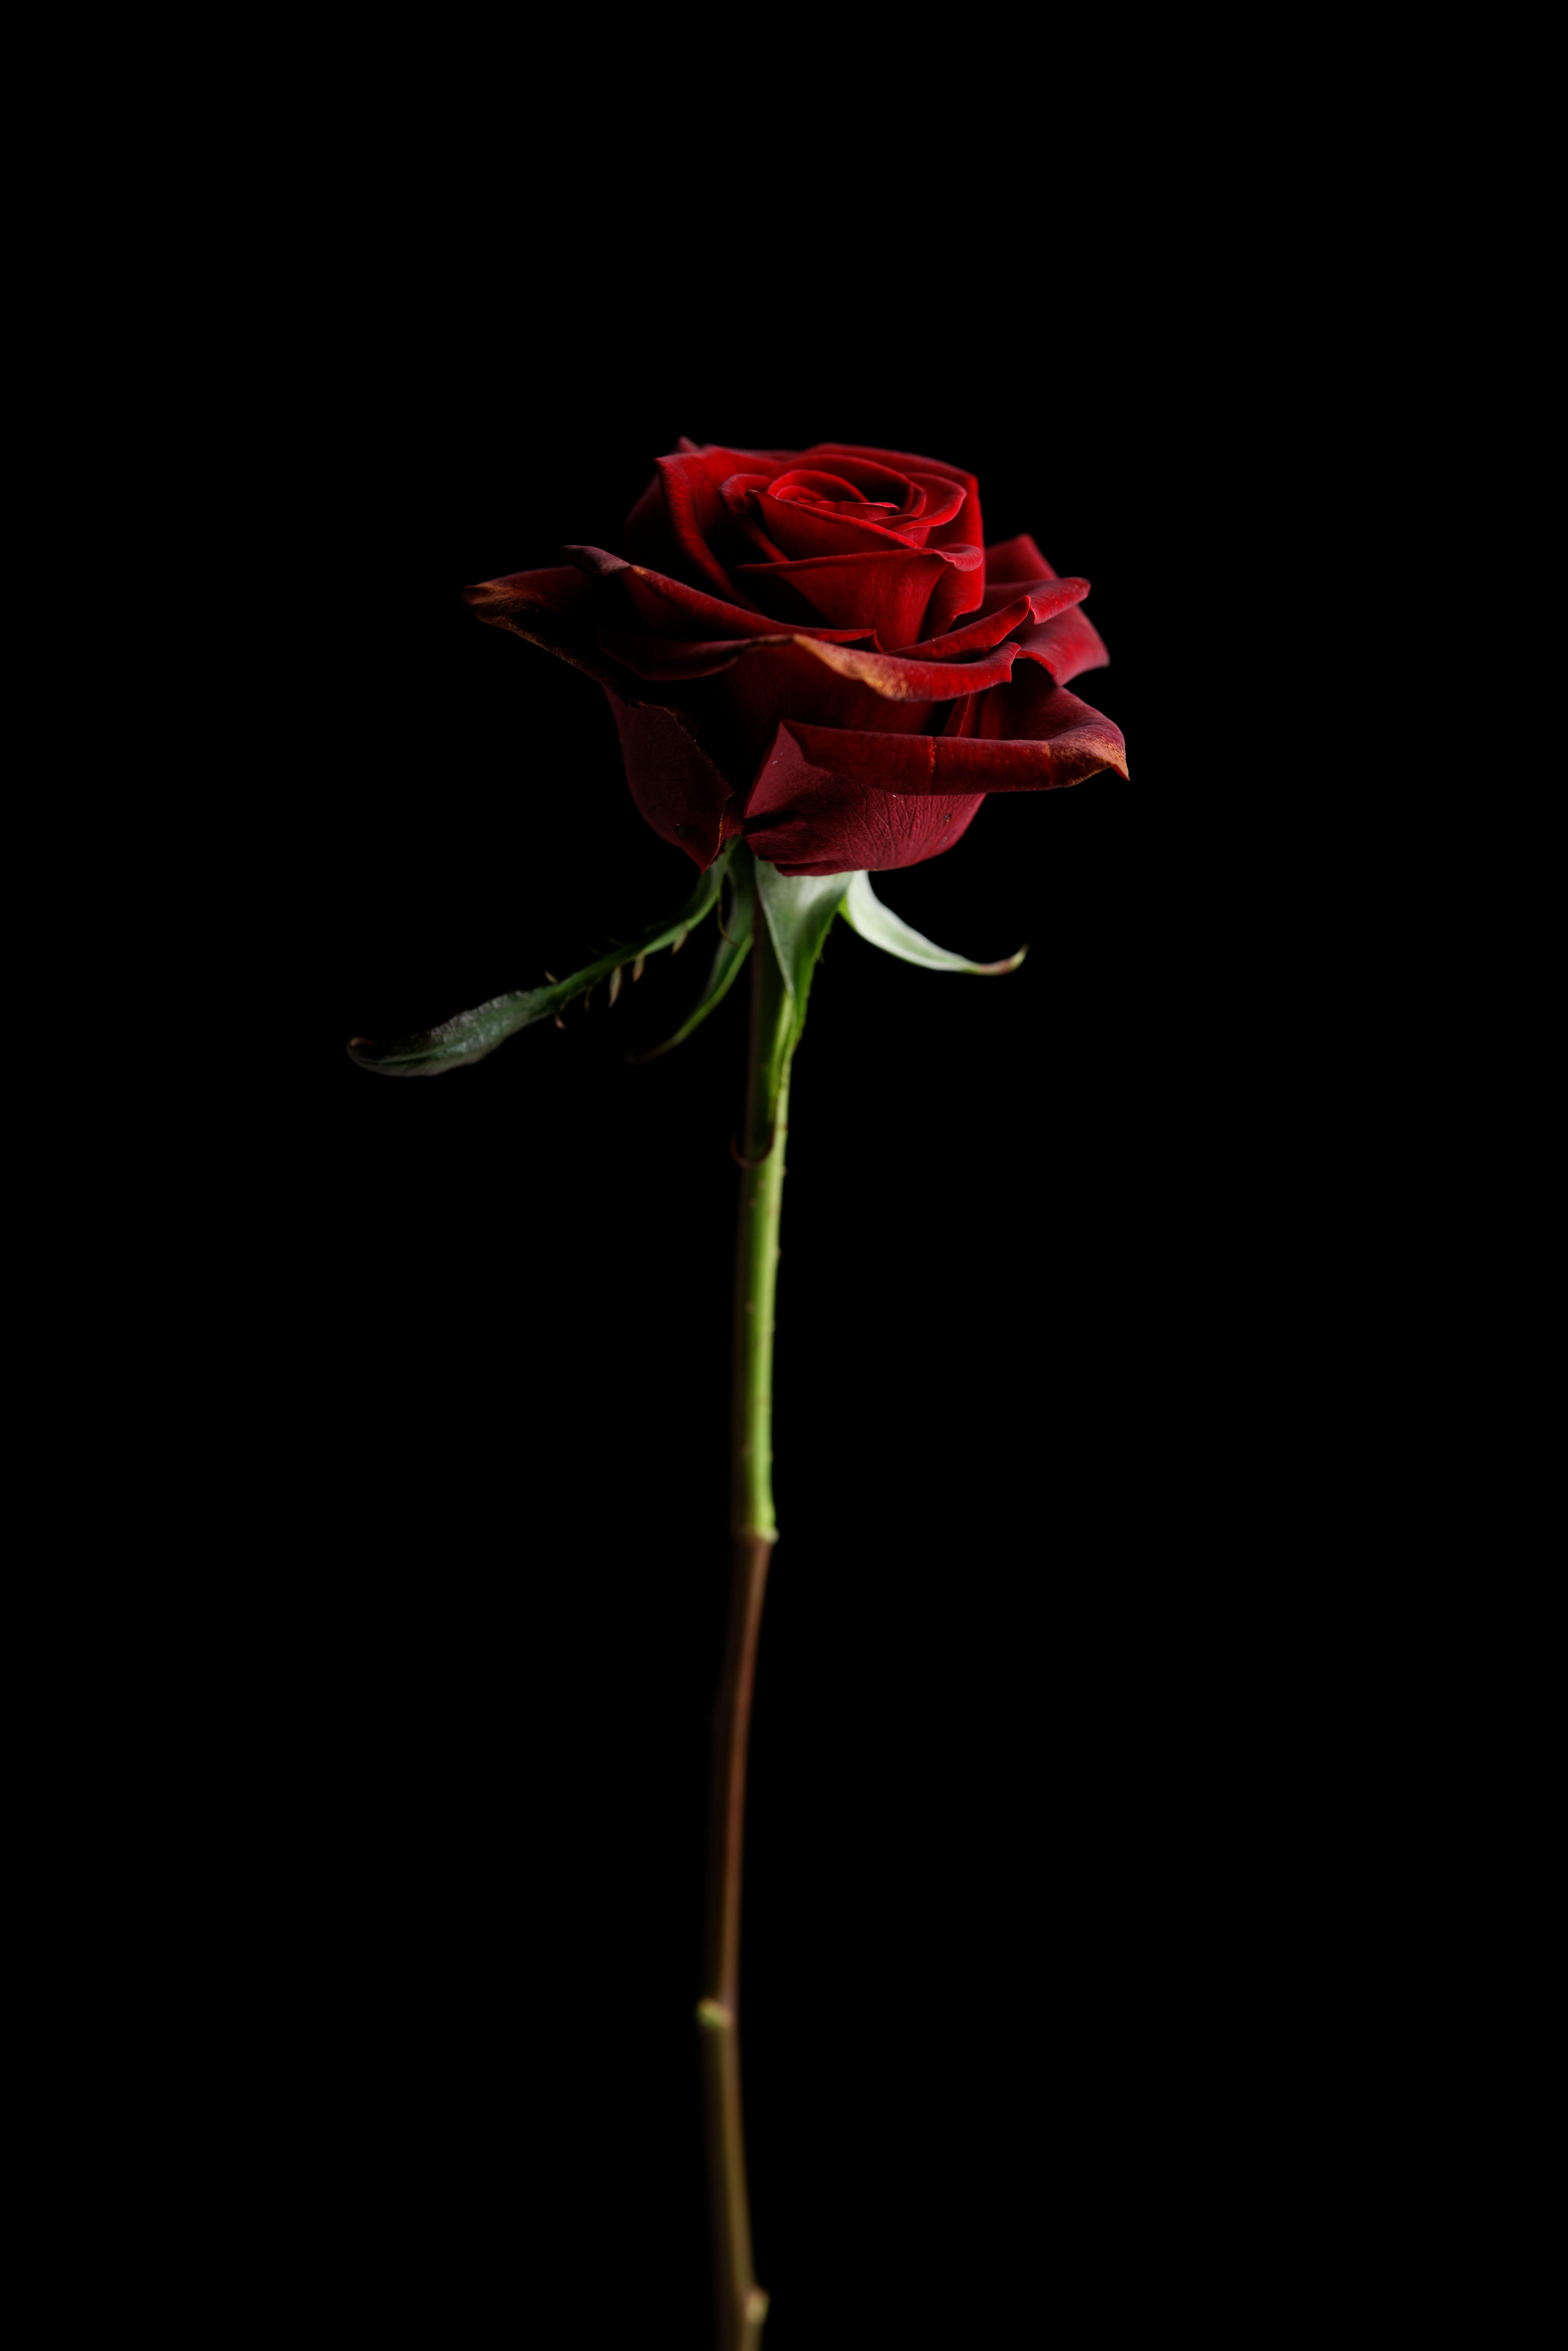 Hoa hồng đỏ trên nền đen: Sự kết hợp giữa hoa hồng đỏ và nền đen là một trong những cách để tạo ra những bức ảnh sang trọng và đầy ấn tượng. Hãy chiêm ngưỡng hình ảnh hoa hồng đỏ trên nền đen để cảm nhận sự hiện đại cùng vẻ đẹp đối lập giữa hai màu sắc này.